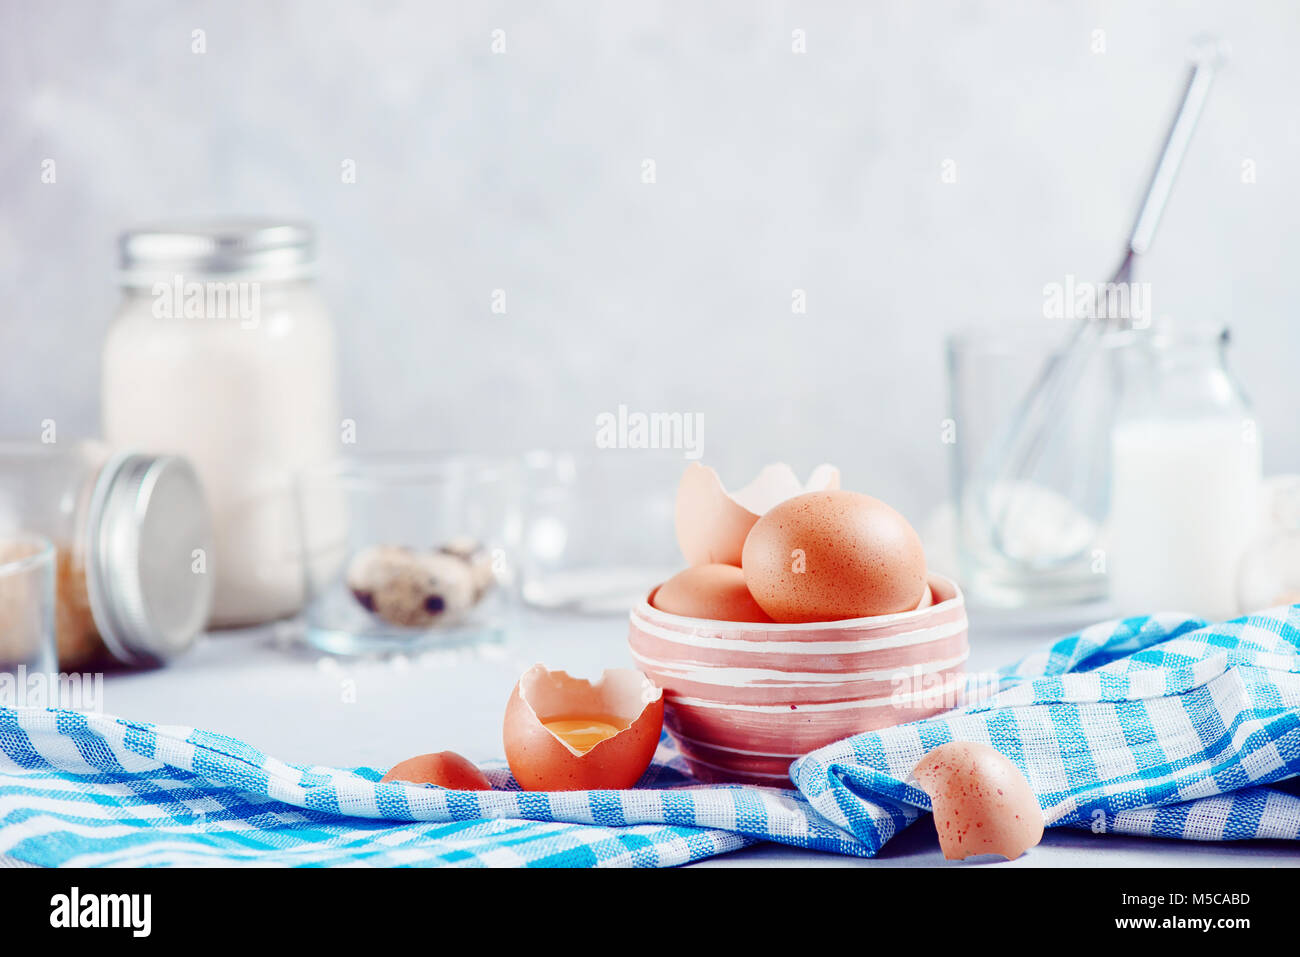 Braune Eier in eine keramische Schüssel auf einen hellen Hintergrund mit Milch, Mehl und Zutaten für Ostern kochen. High-key-Hintergrund mit kopieren. Stockfoto